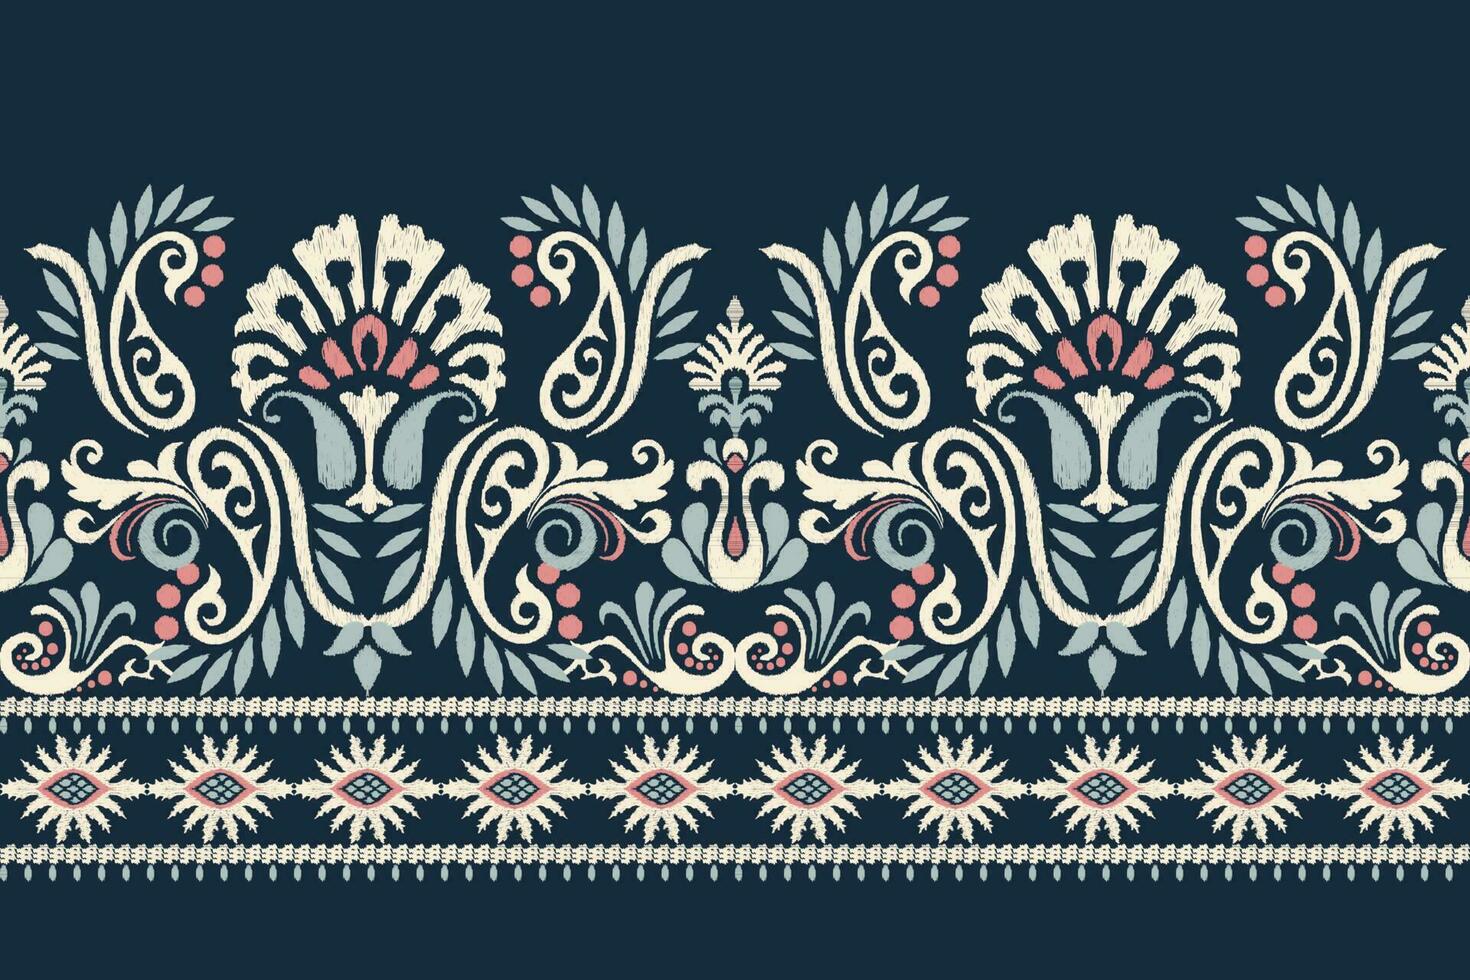 Ikat Blumen- Paisley Stickerei auf Marine Blau hintergrund.ikat ethnisch orientalisch Muster traditionell.aztekisch Stil abstrakt Vektor illustration.design zum Textur, Stoff, Kleidung, Verpackung, Dekoration, Sarong.